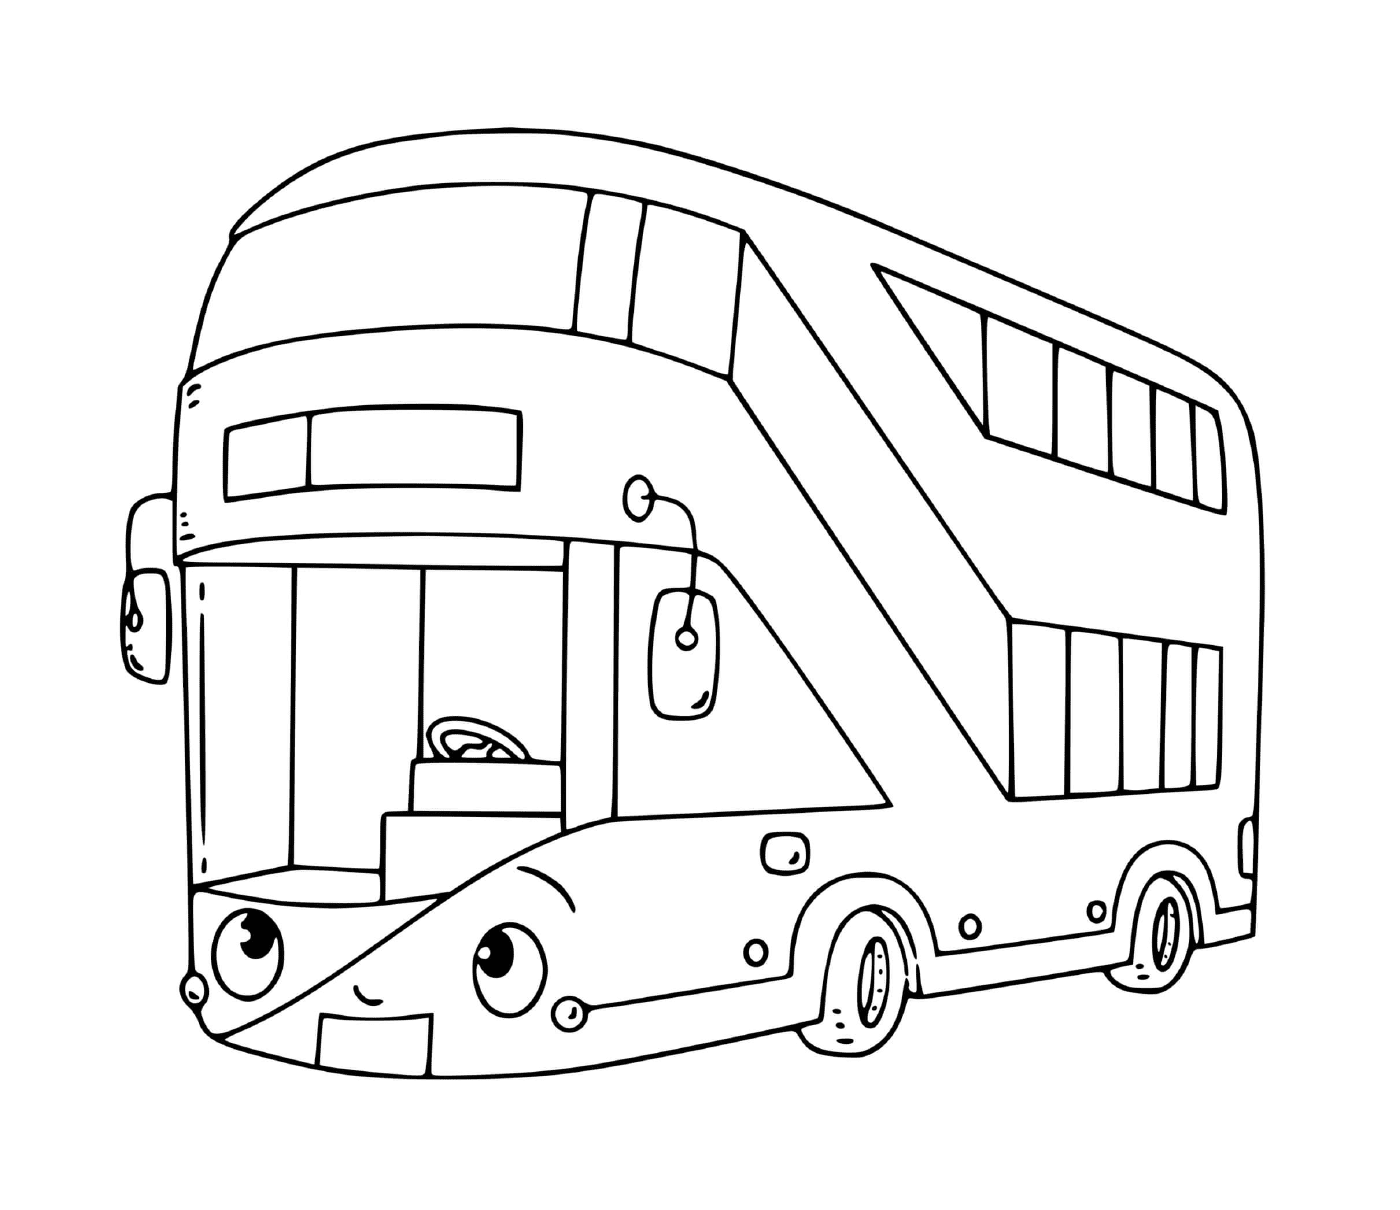  Um ônibus de dois andares para transporte 